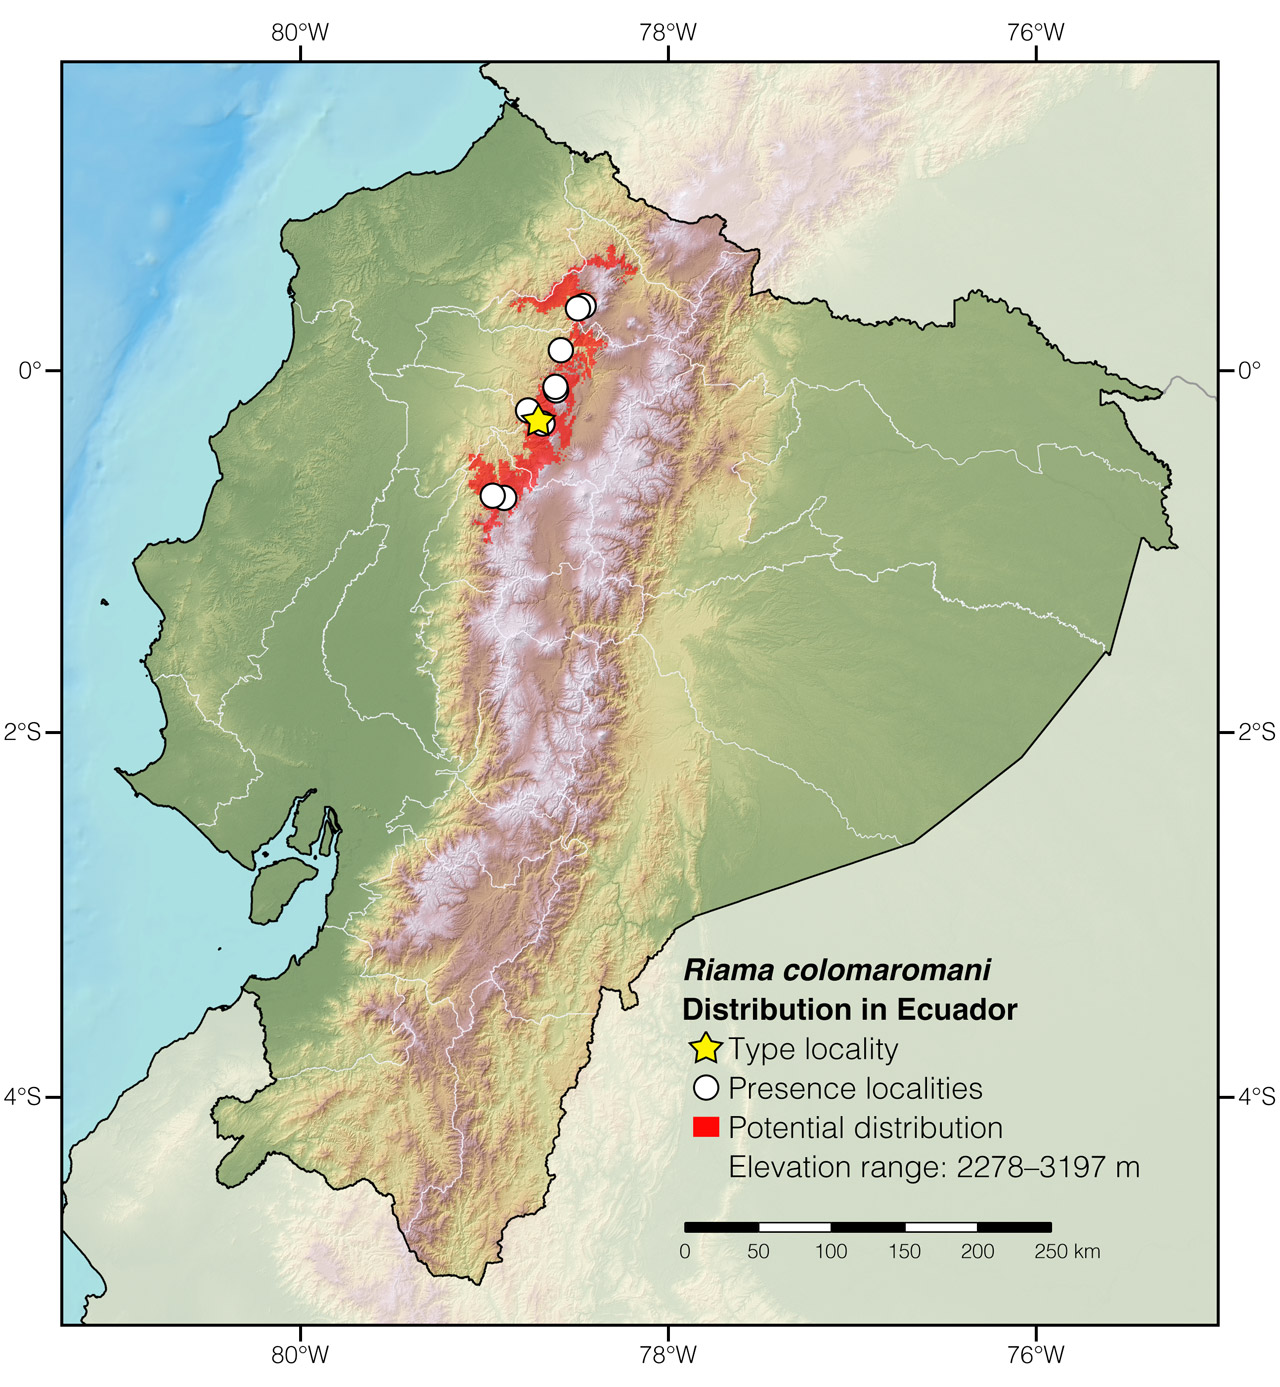 Distribution of Riama colomaromani in Ecuador